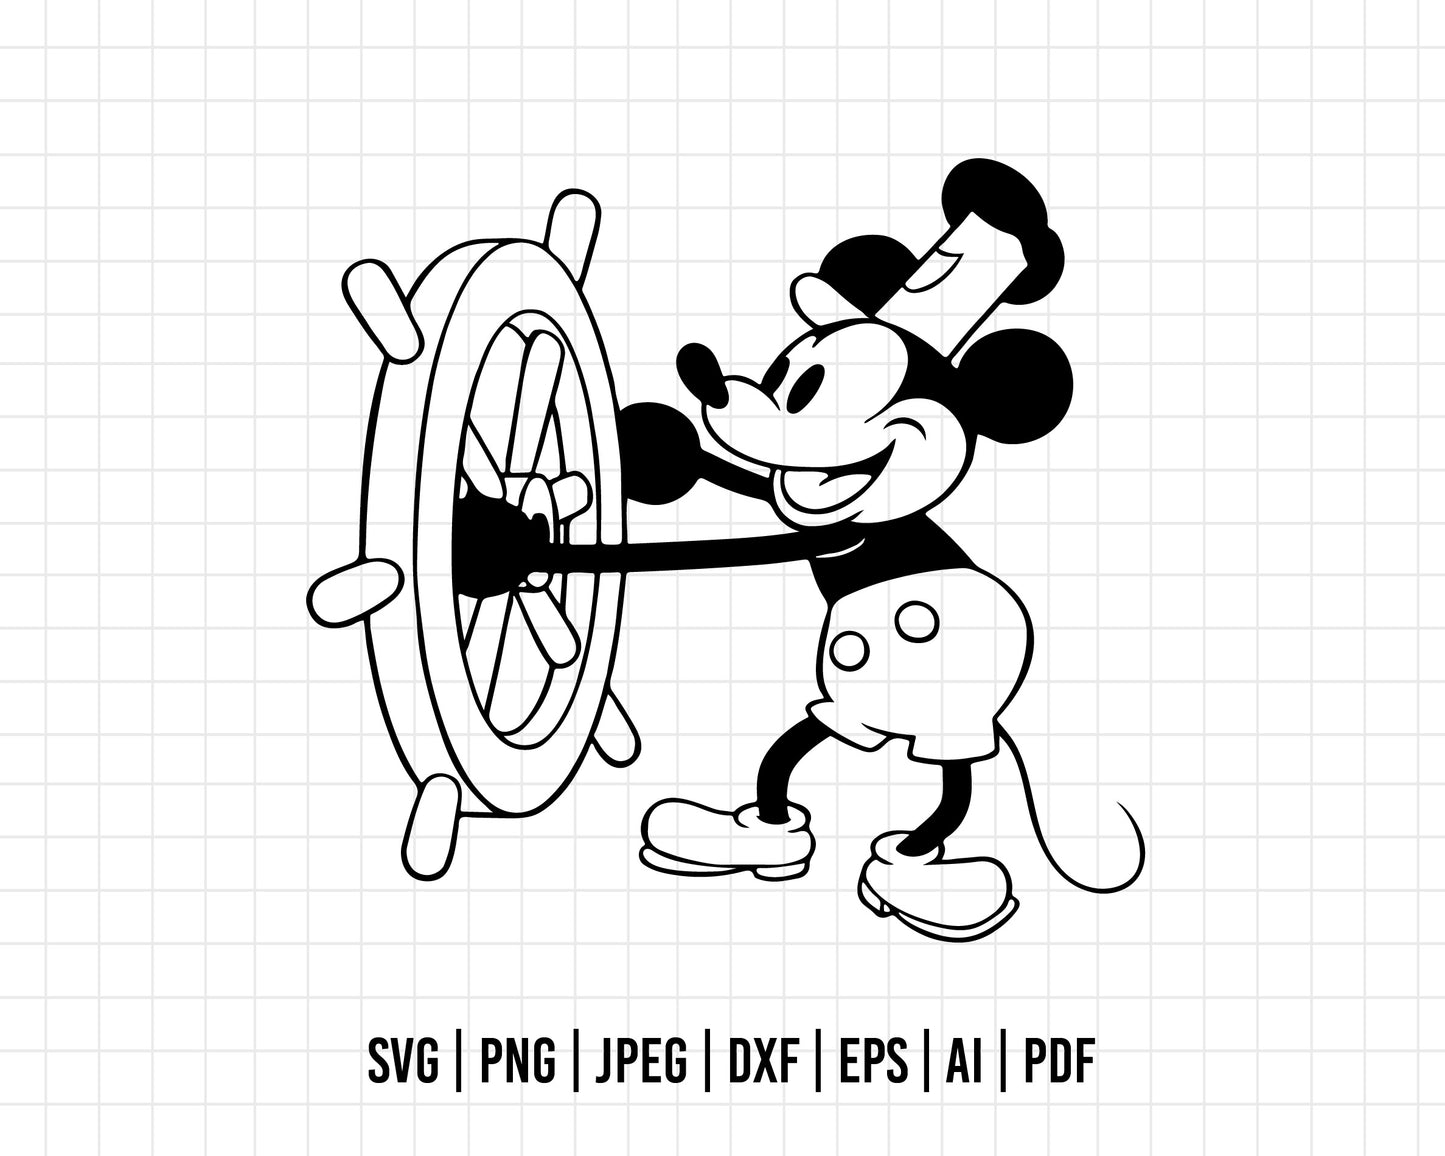 COD261- Mickey mouse svg, Mickey Svg, Disney svg, Magical svg, Mickey face svg